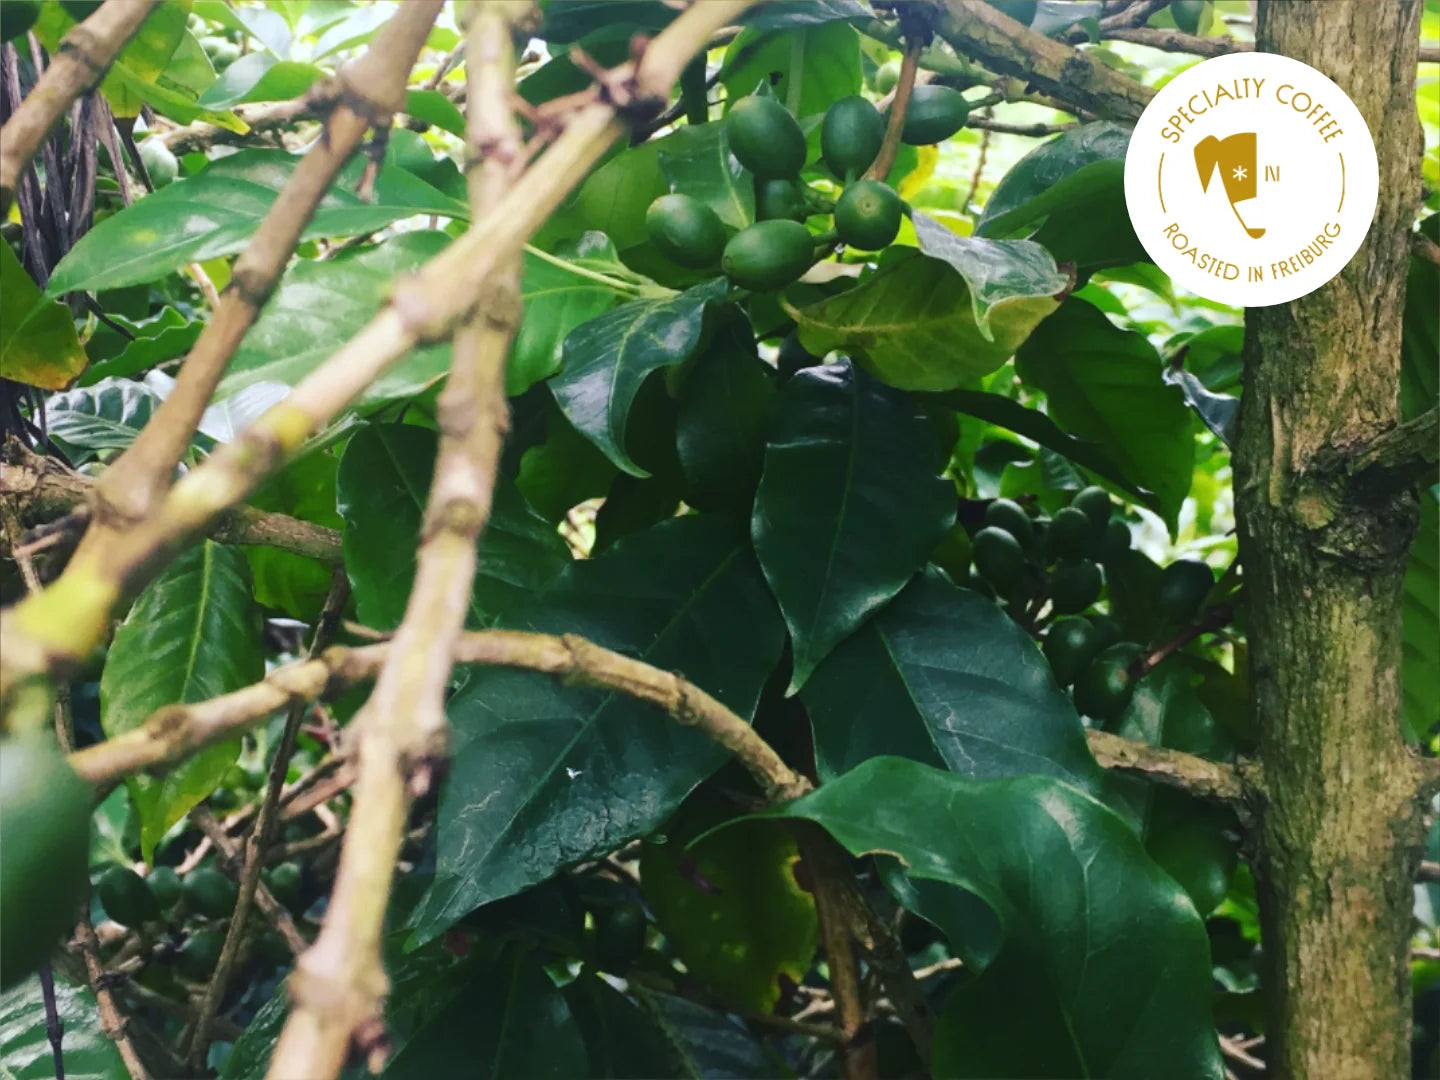 Titelbild zum Artikel über Lowcaf. Zu sehen ist Coffea arabica cv. laurina auf der Insel La Réunion, fotografiert von Adrien Chatenay CC-BY-SA 4.0.